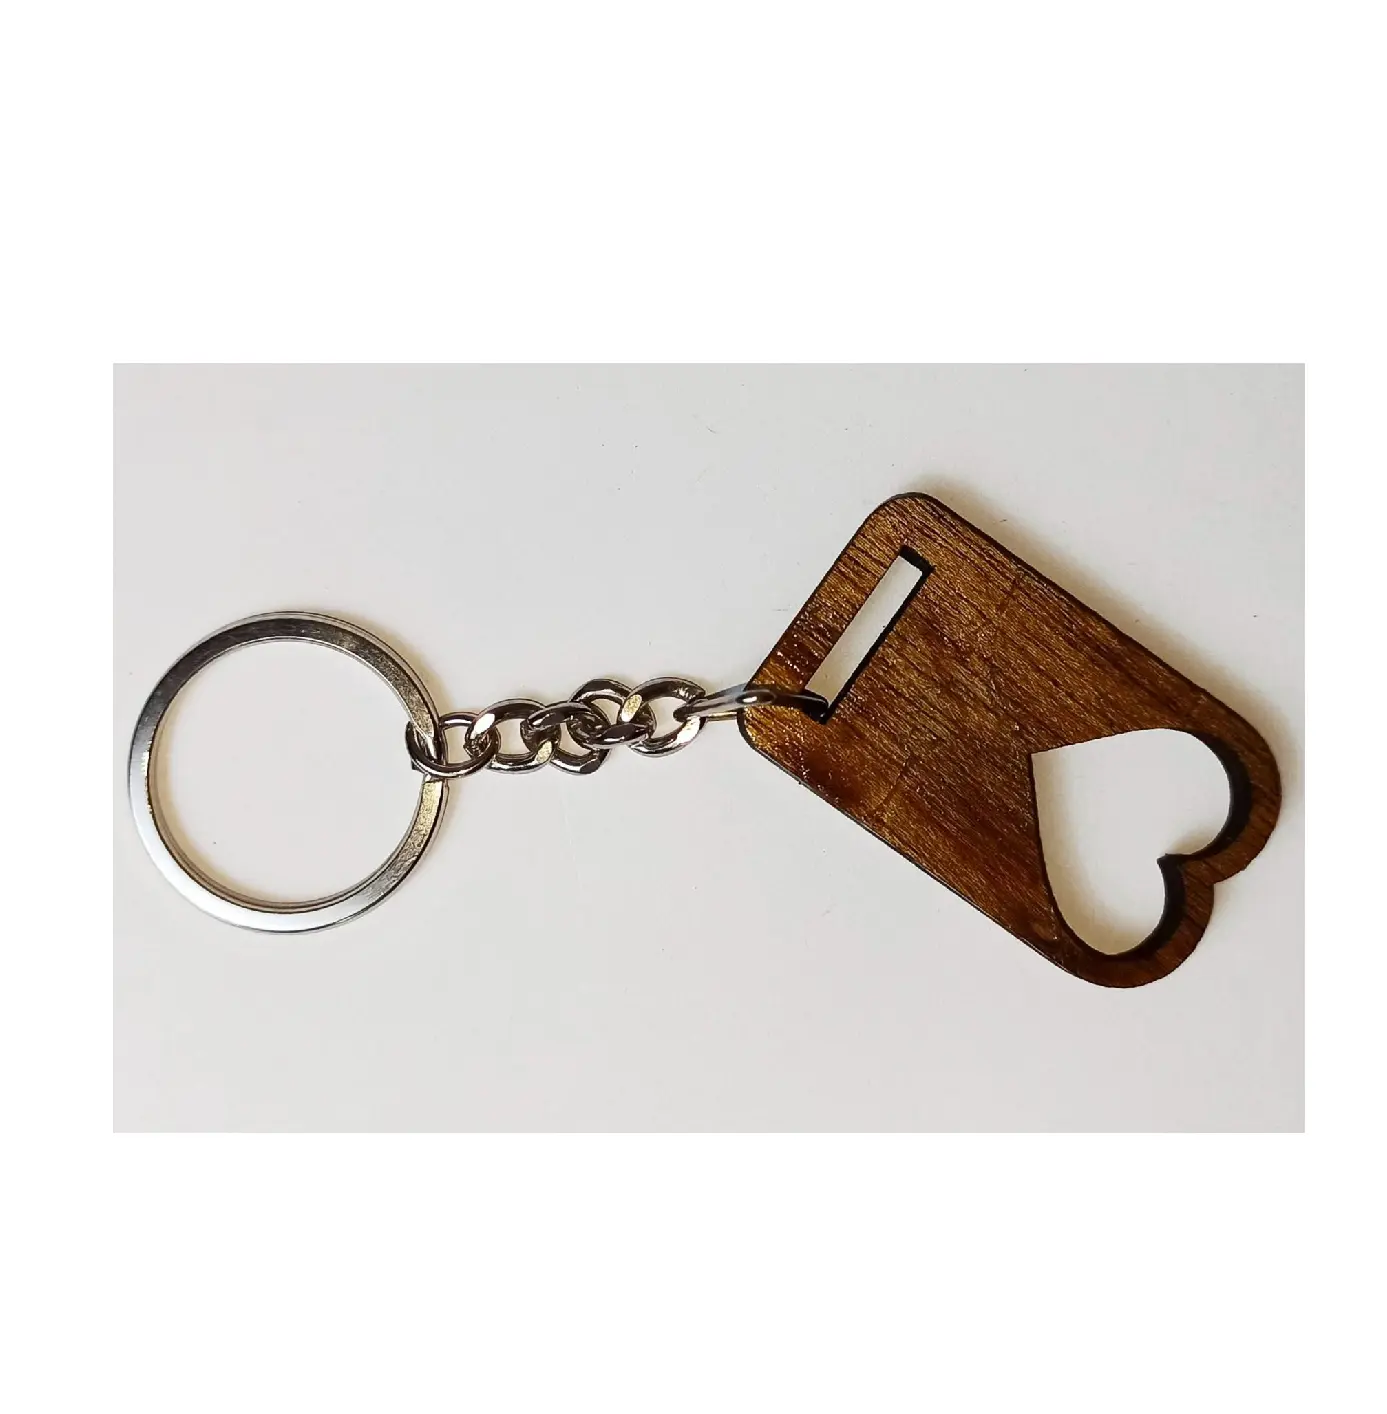 Porte-clés en bois unique d'excellente qualité Porte-clés en bois de qualité Porte-clés design en forme de coeur Taille personnalisée au meilleur prix